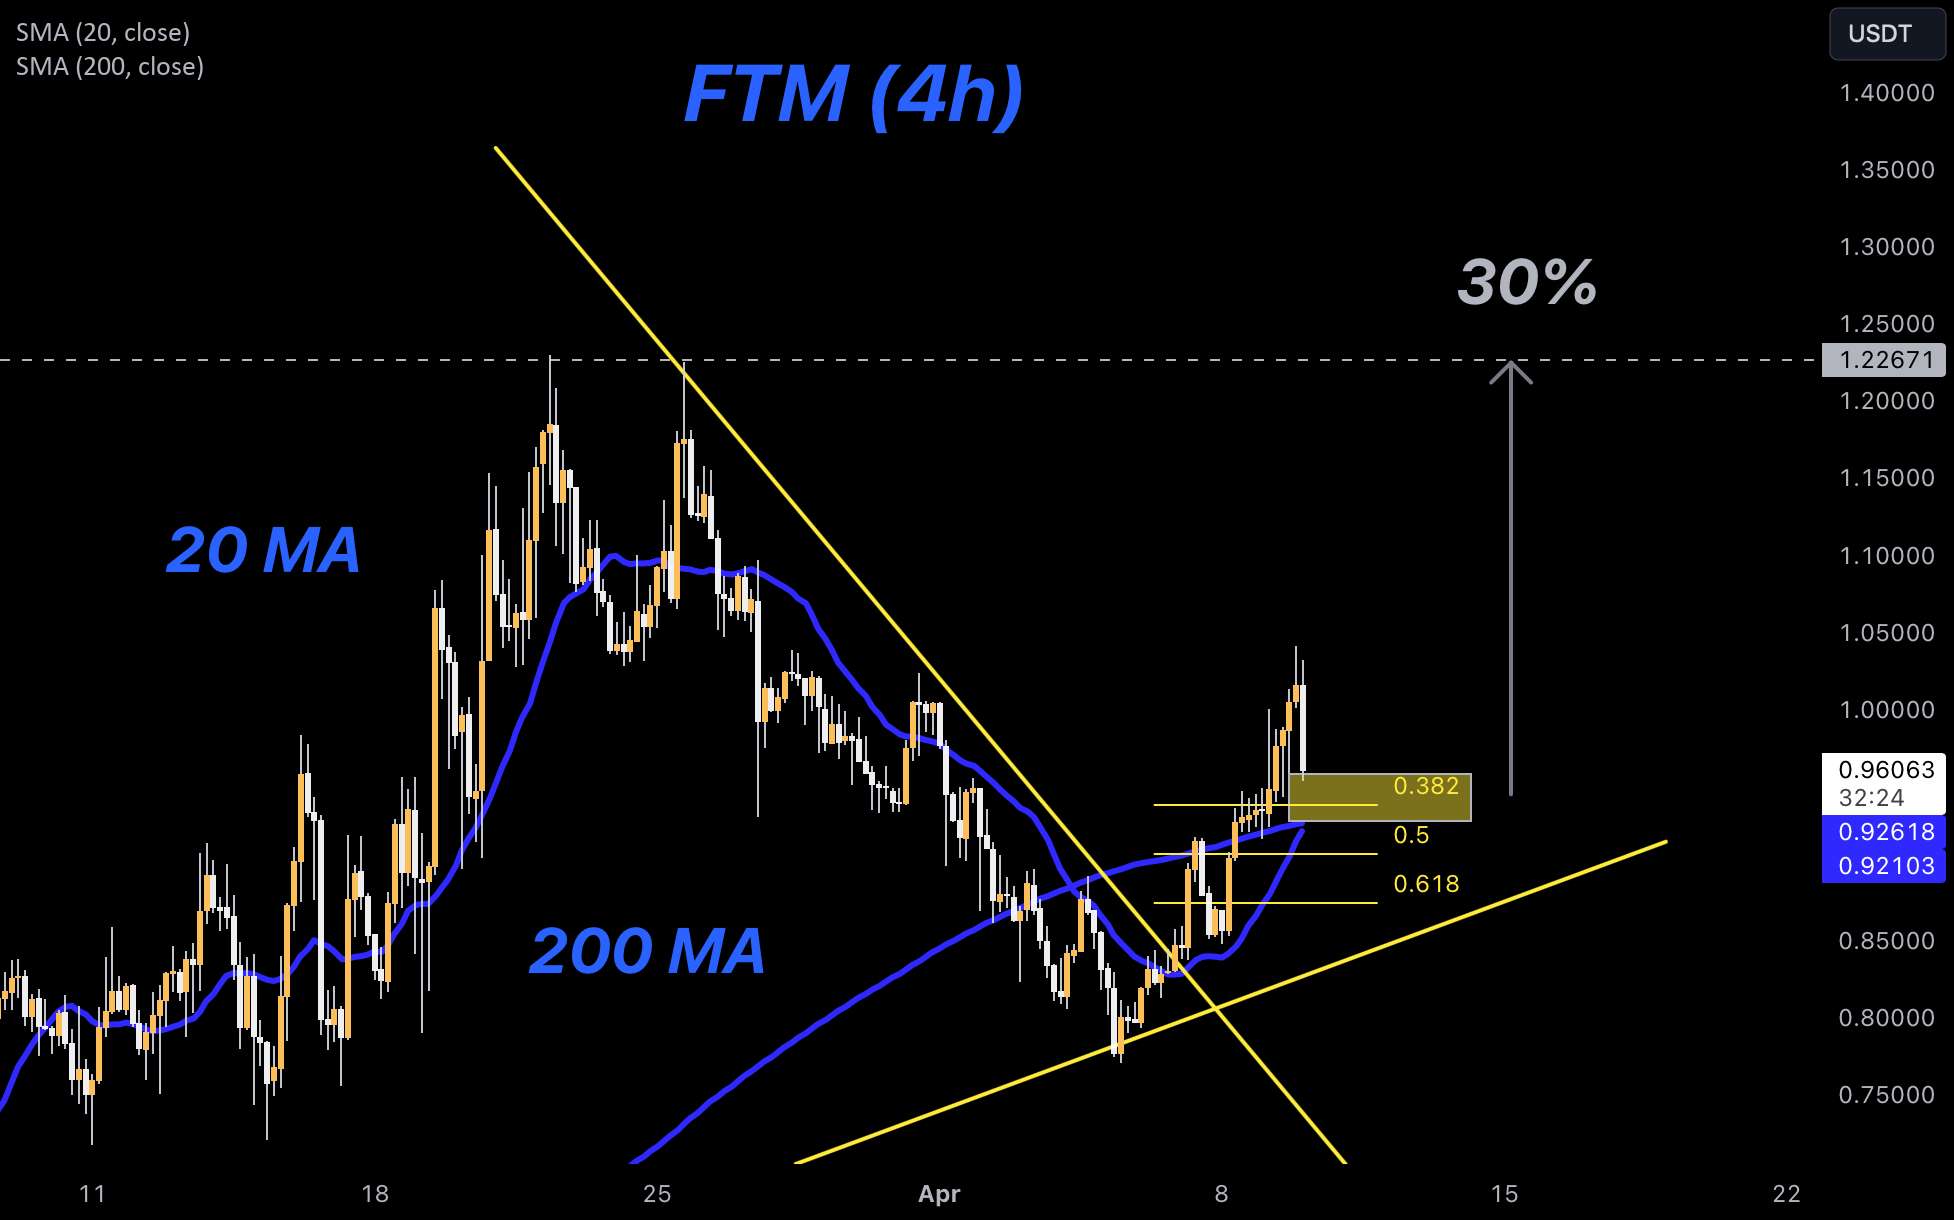  تحلیل فانتوم - FTM قوی به نظر می رسد (30٪ حرکت در آینده است؟!)